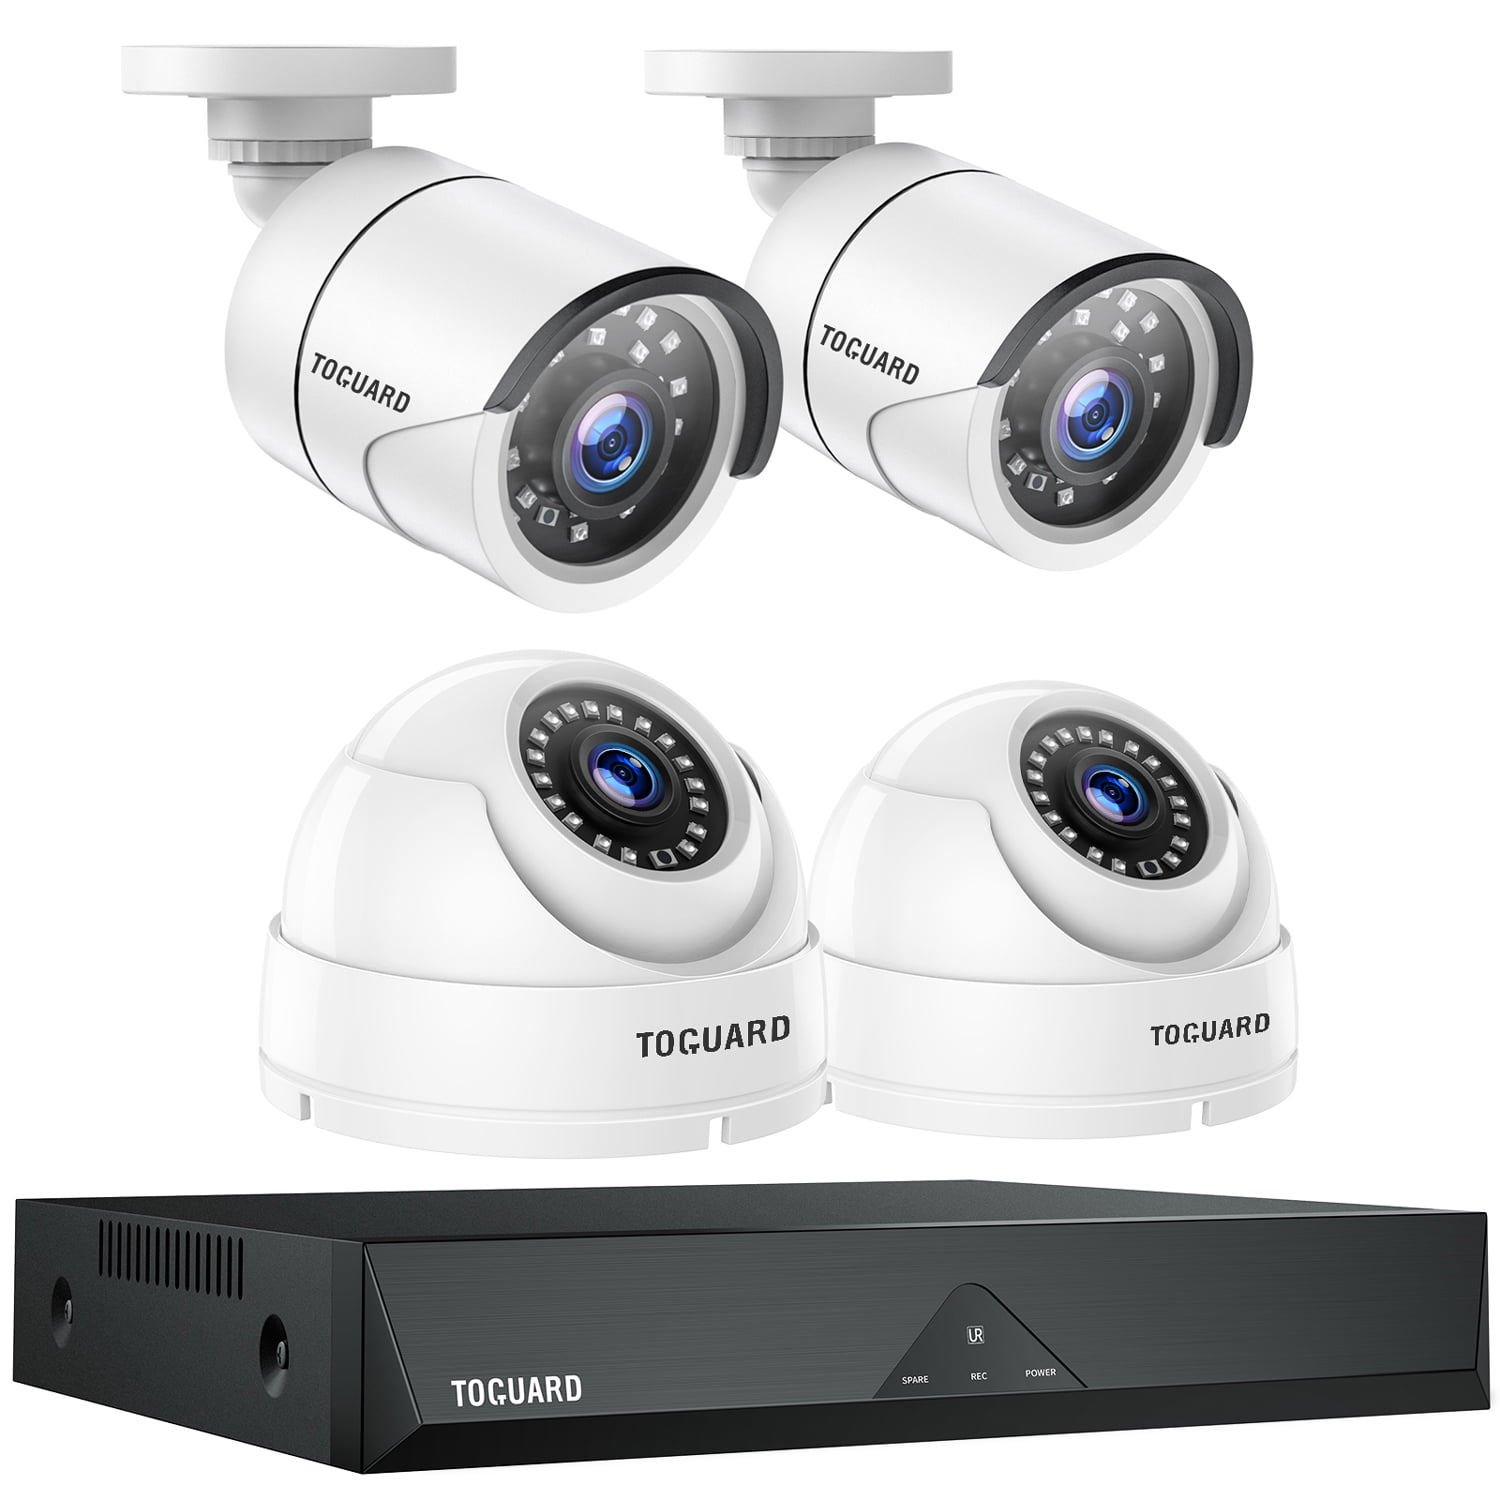 HIKVISION CCTV SYSTEM 5MP 4CH 8CH DVR 1080P PIR WARNING LIGHT BULLET CAMERA KIT 